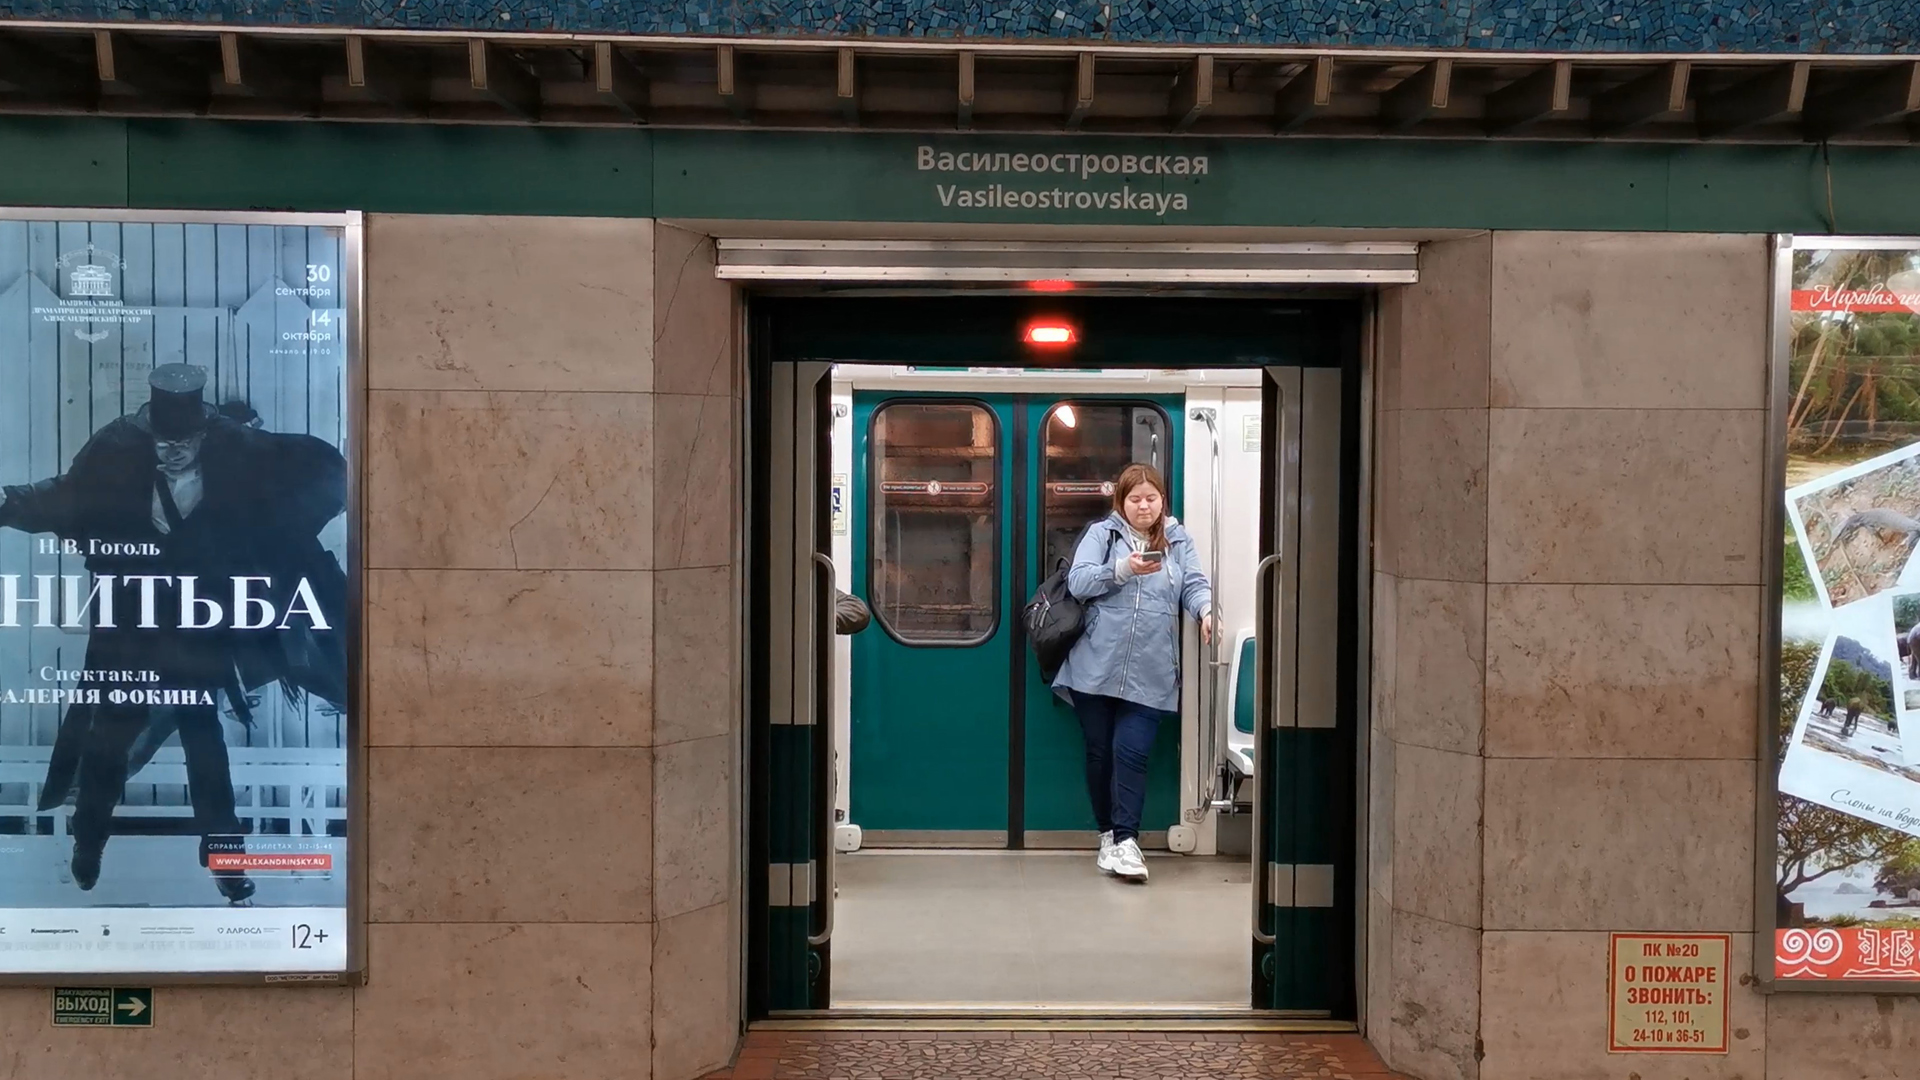 Горизонтальный лифт в метро Петербурга